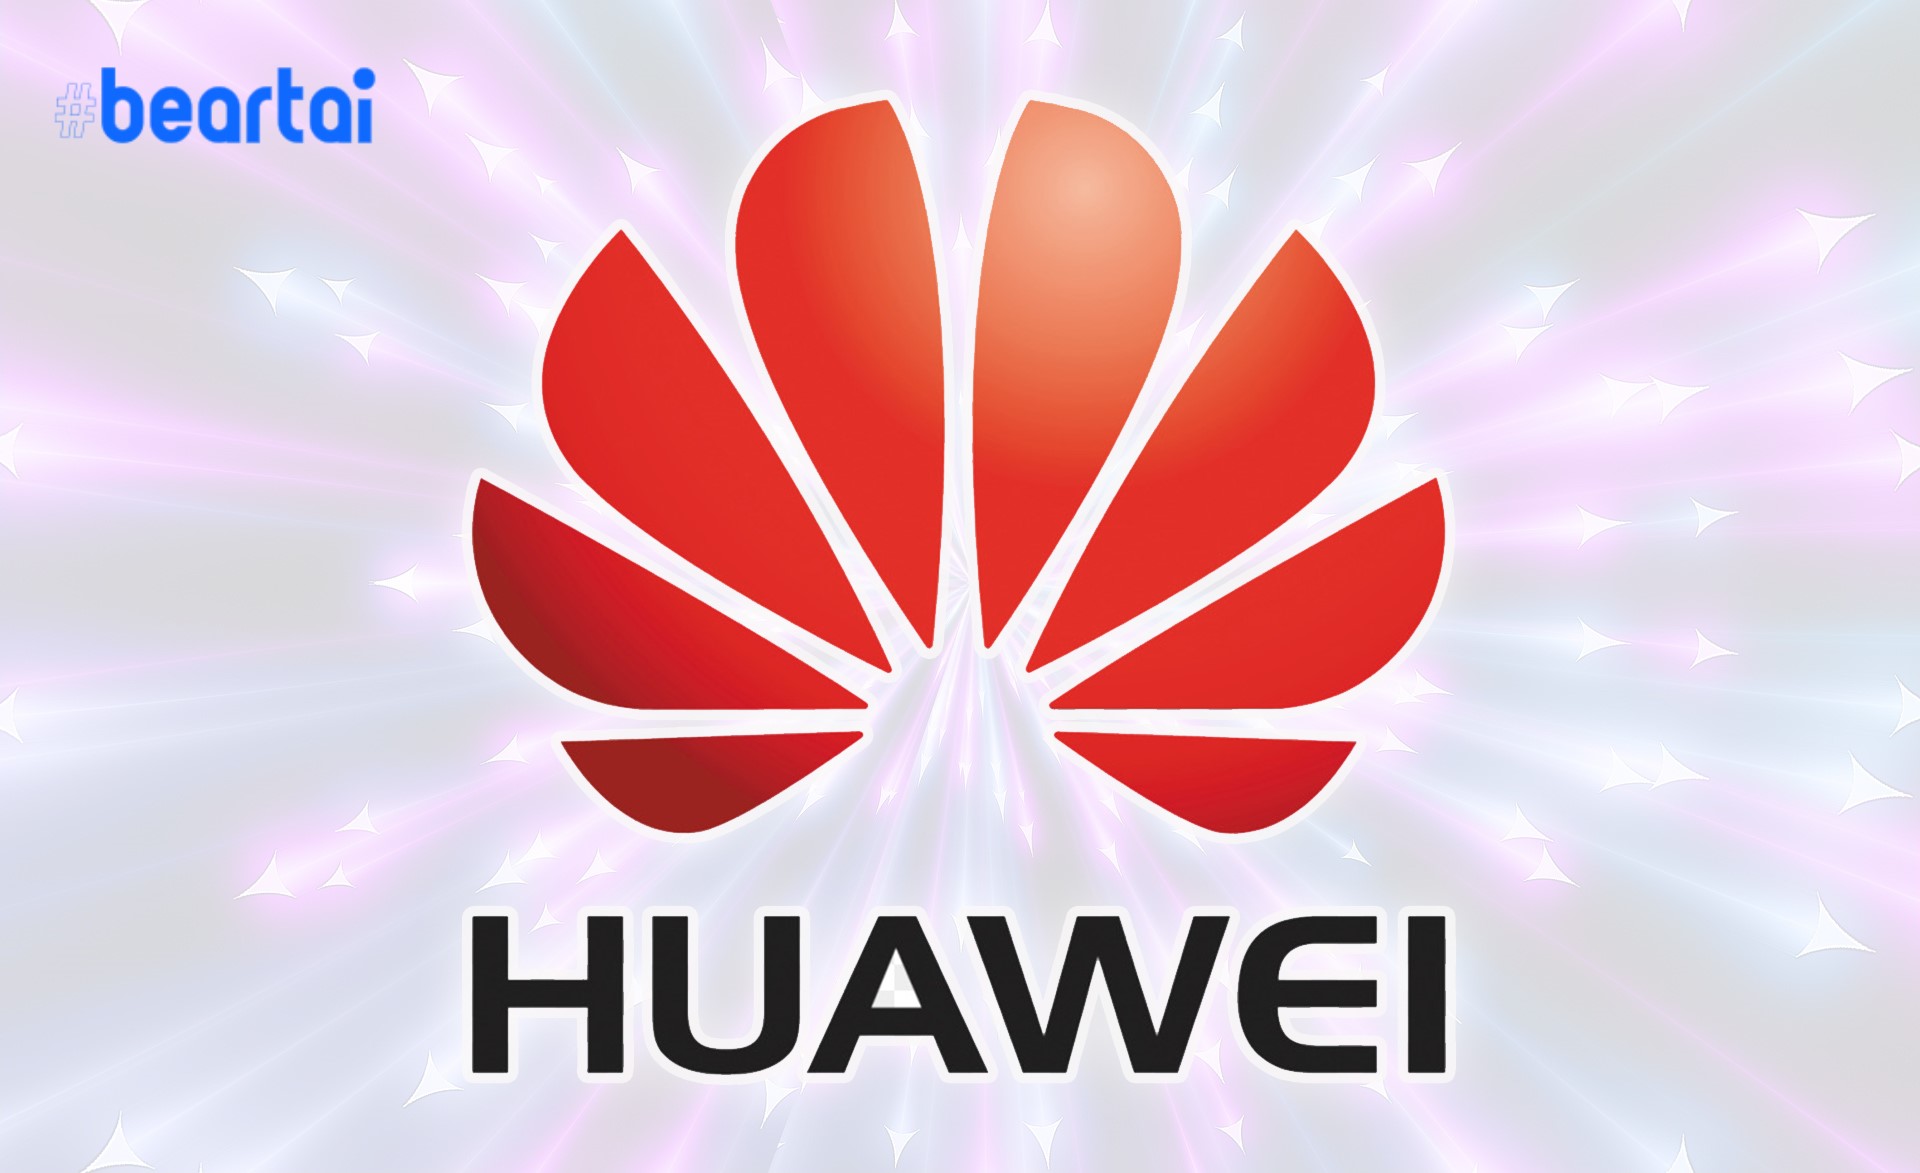 รัสเซียเผยพร้อมทำงานกับ Huawei บนเครือข่าย 5G